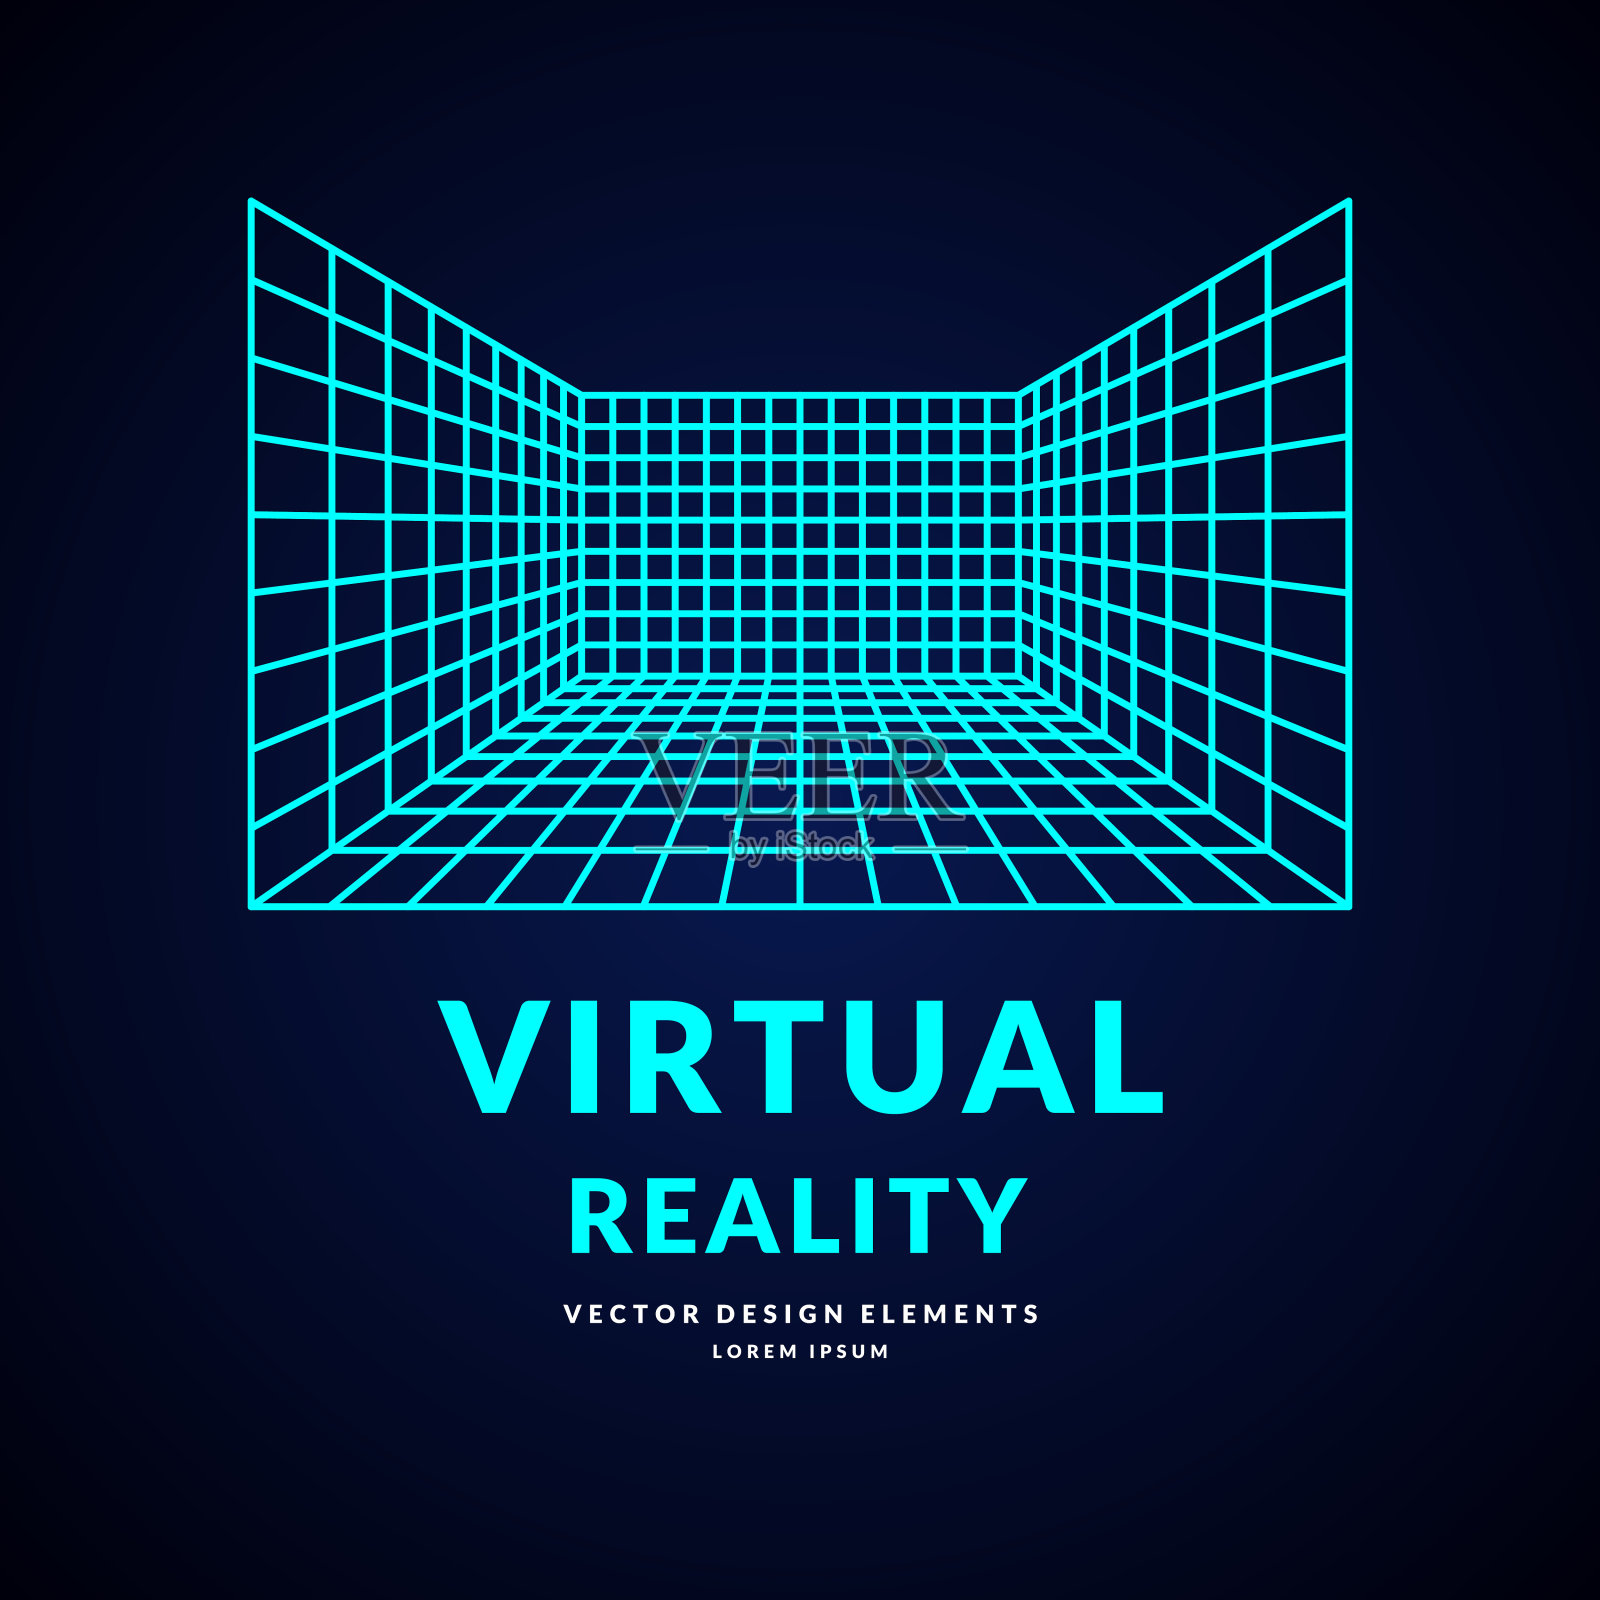 虚拟现实和游戏新技术。带透视网格的房间插画图片素材